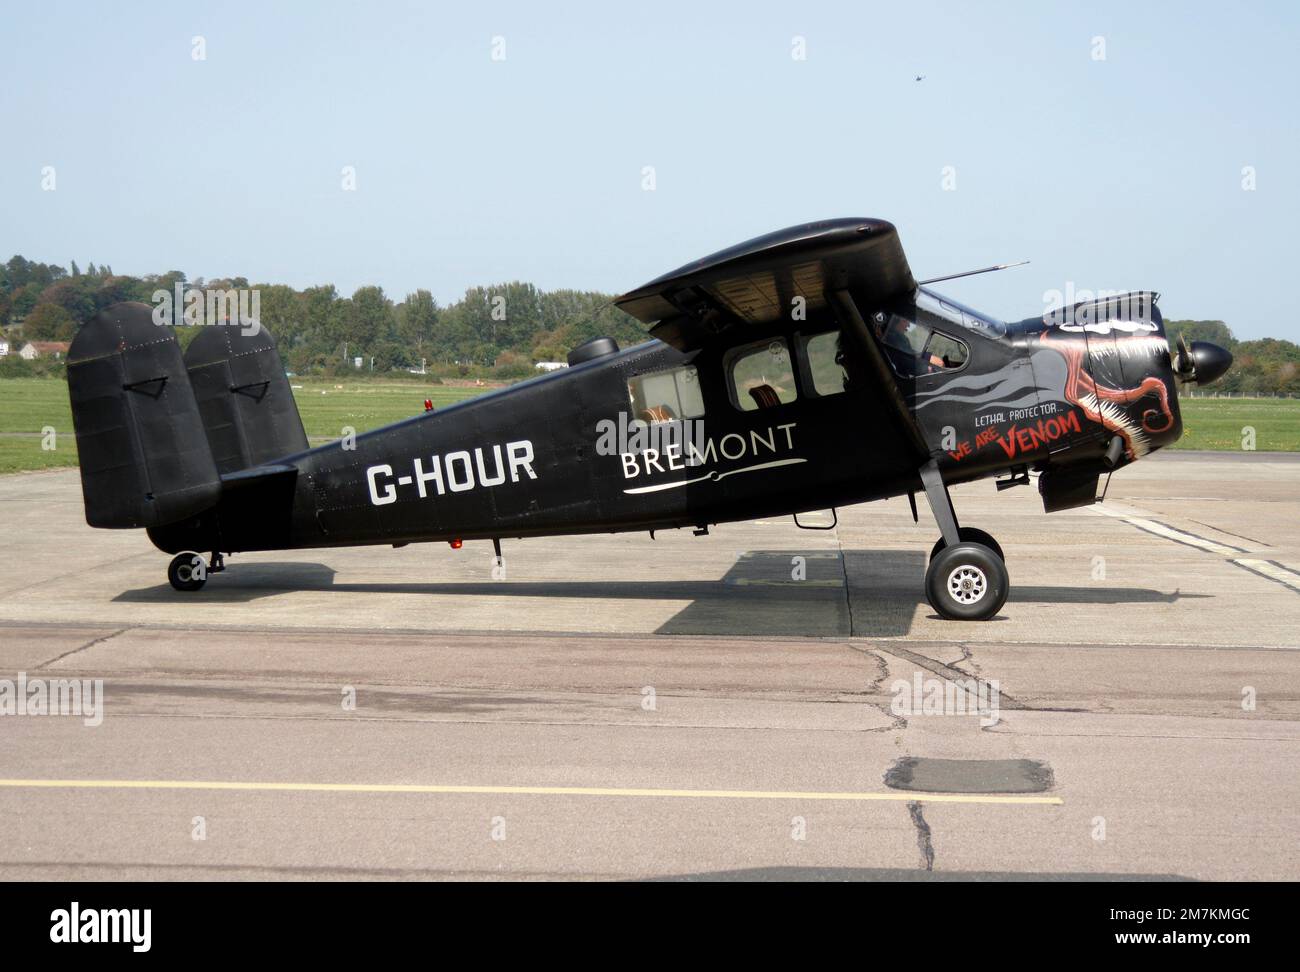 Max Holste MH-1521 C1 Broussard am Brighton City Airport wirbt für Bremont Uhren. Stockfoto